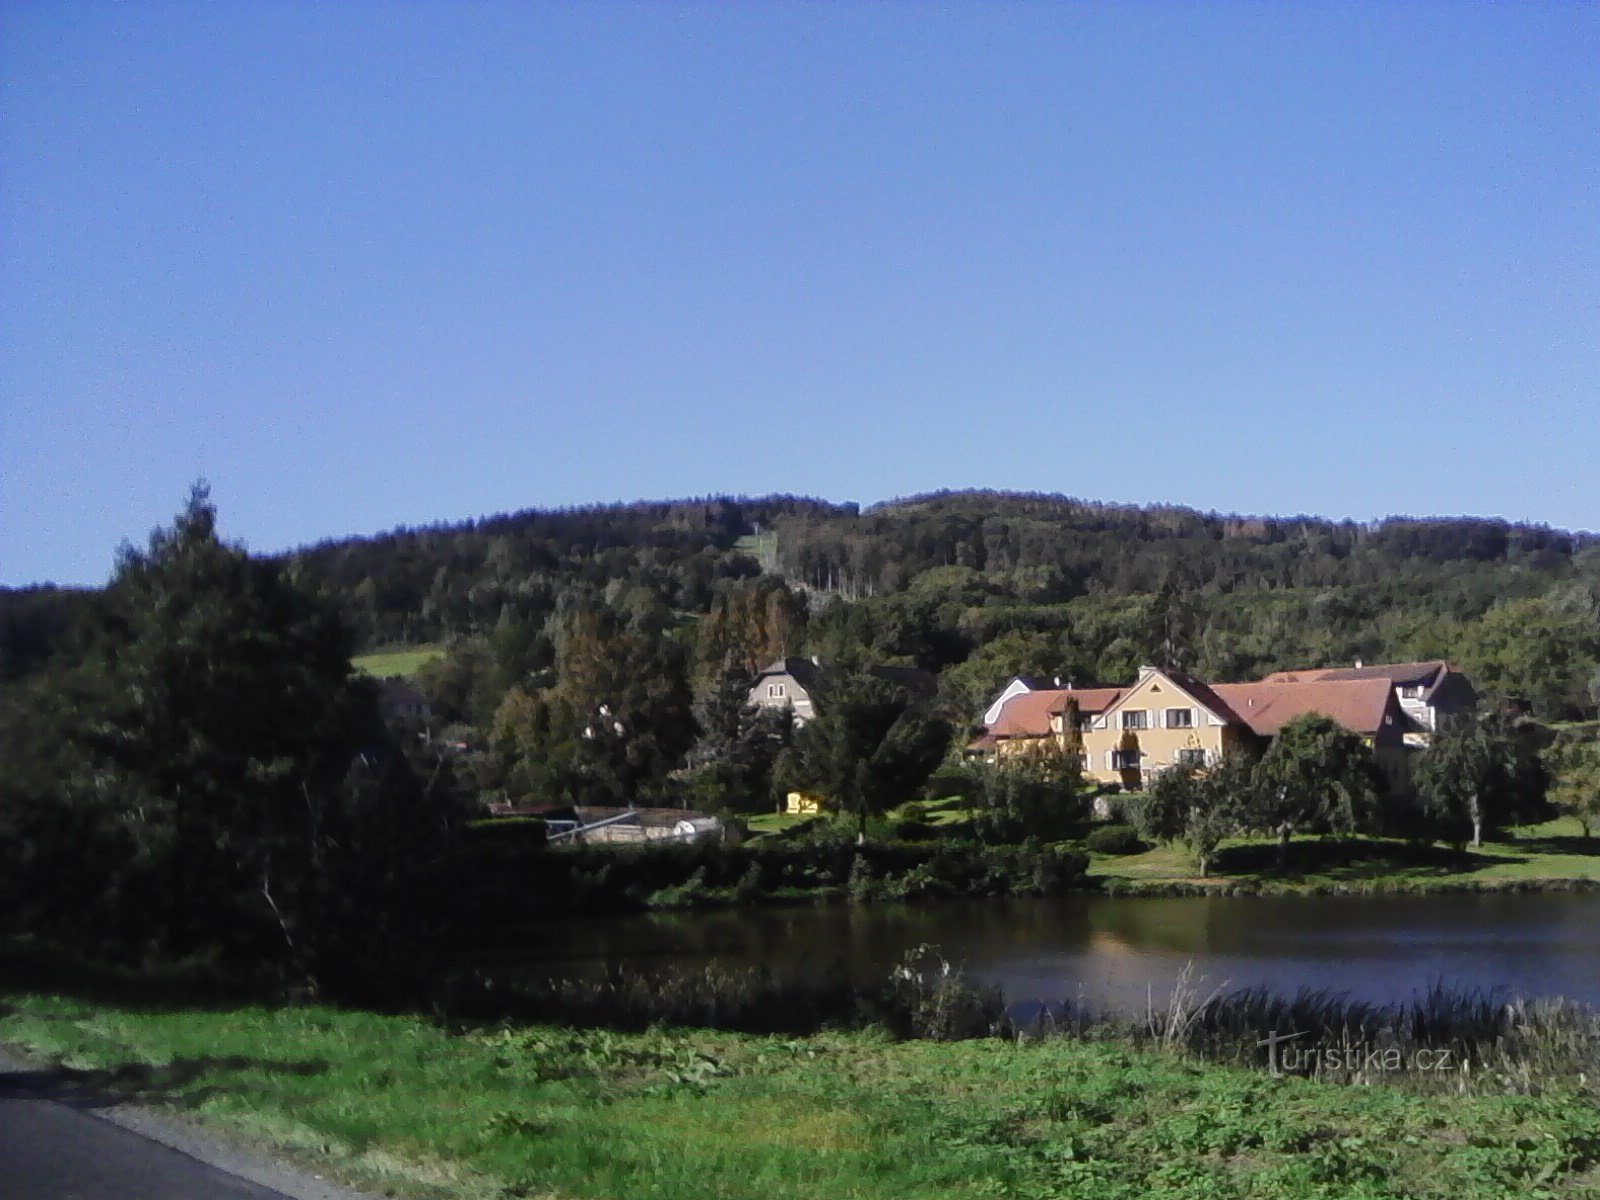 2. Xem qua Lihovarský rybník trong Jetřichovice đến Monínec.